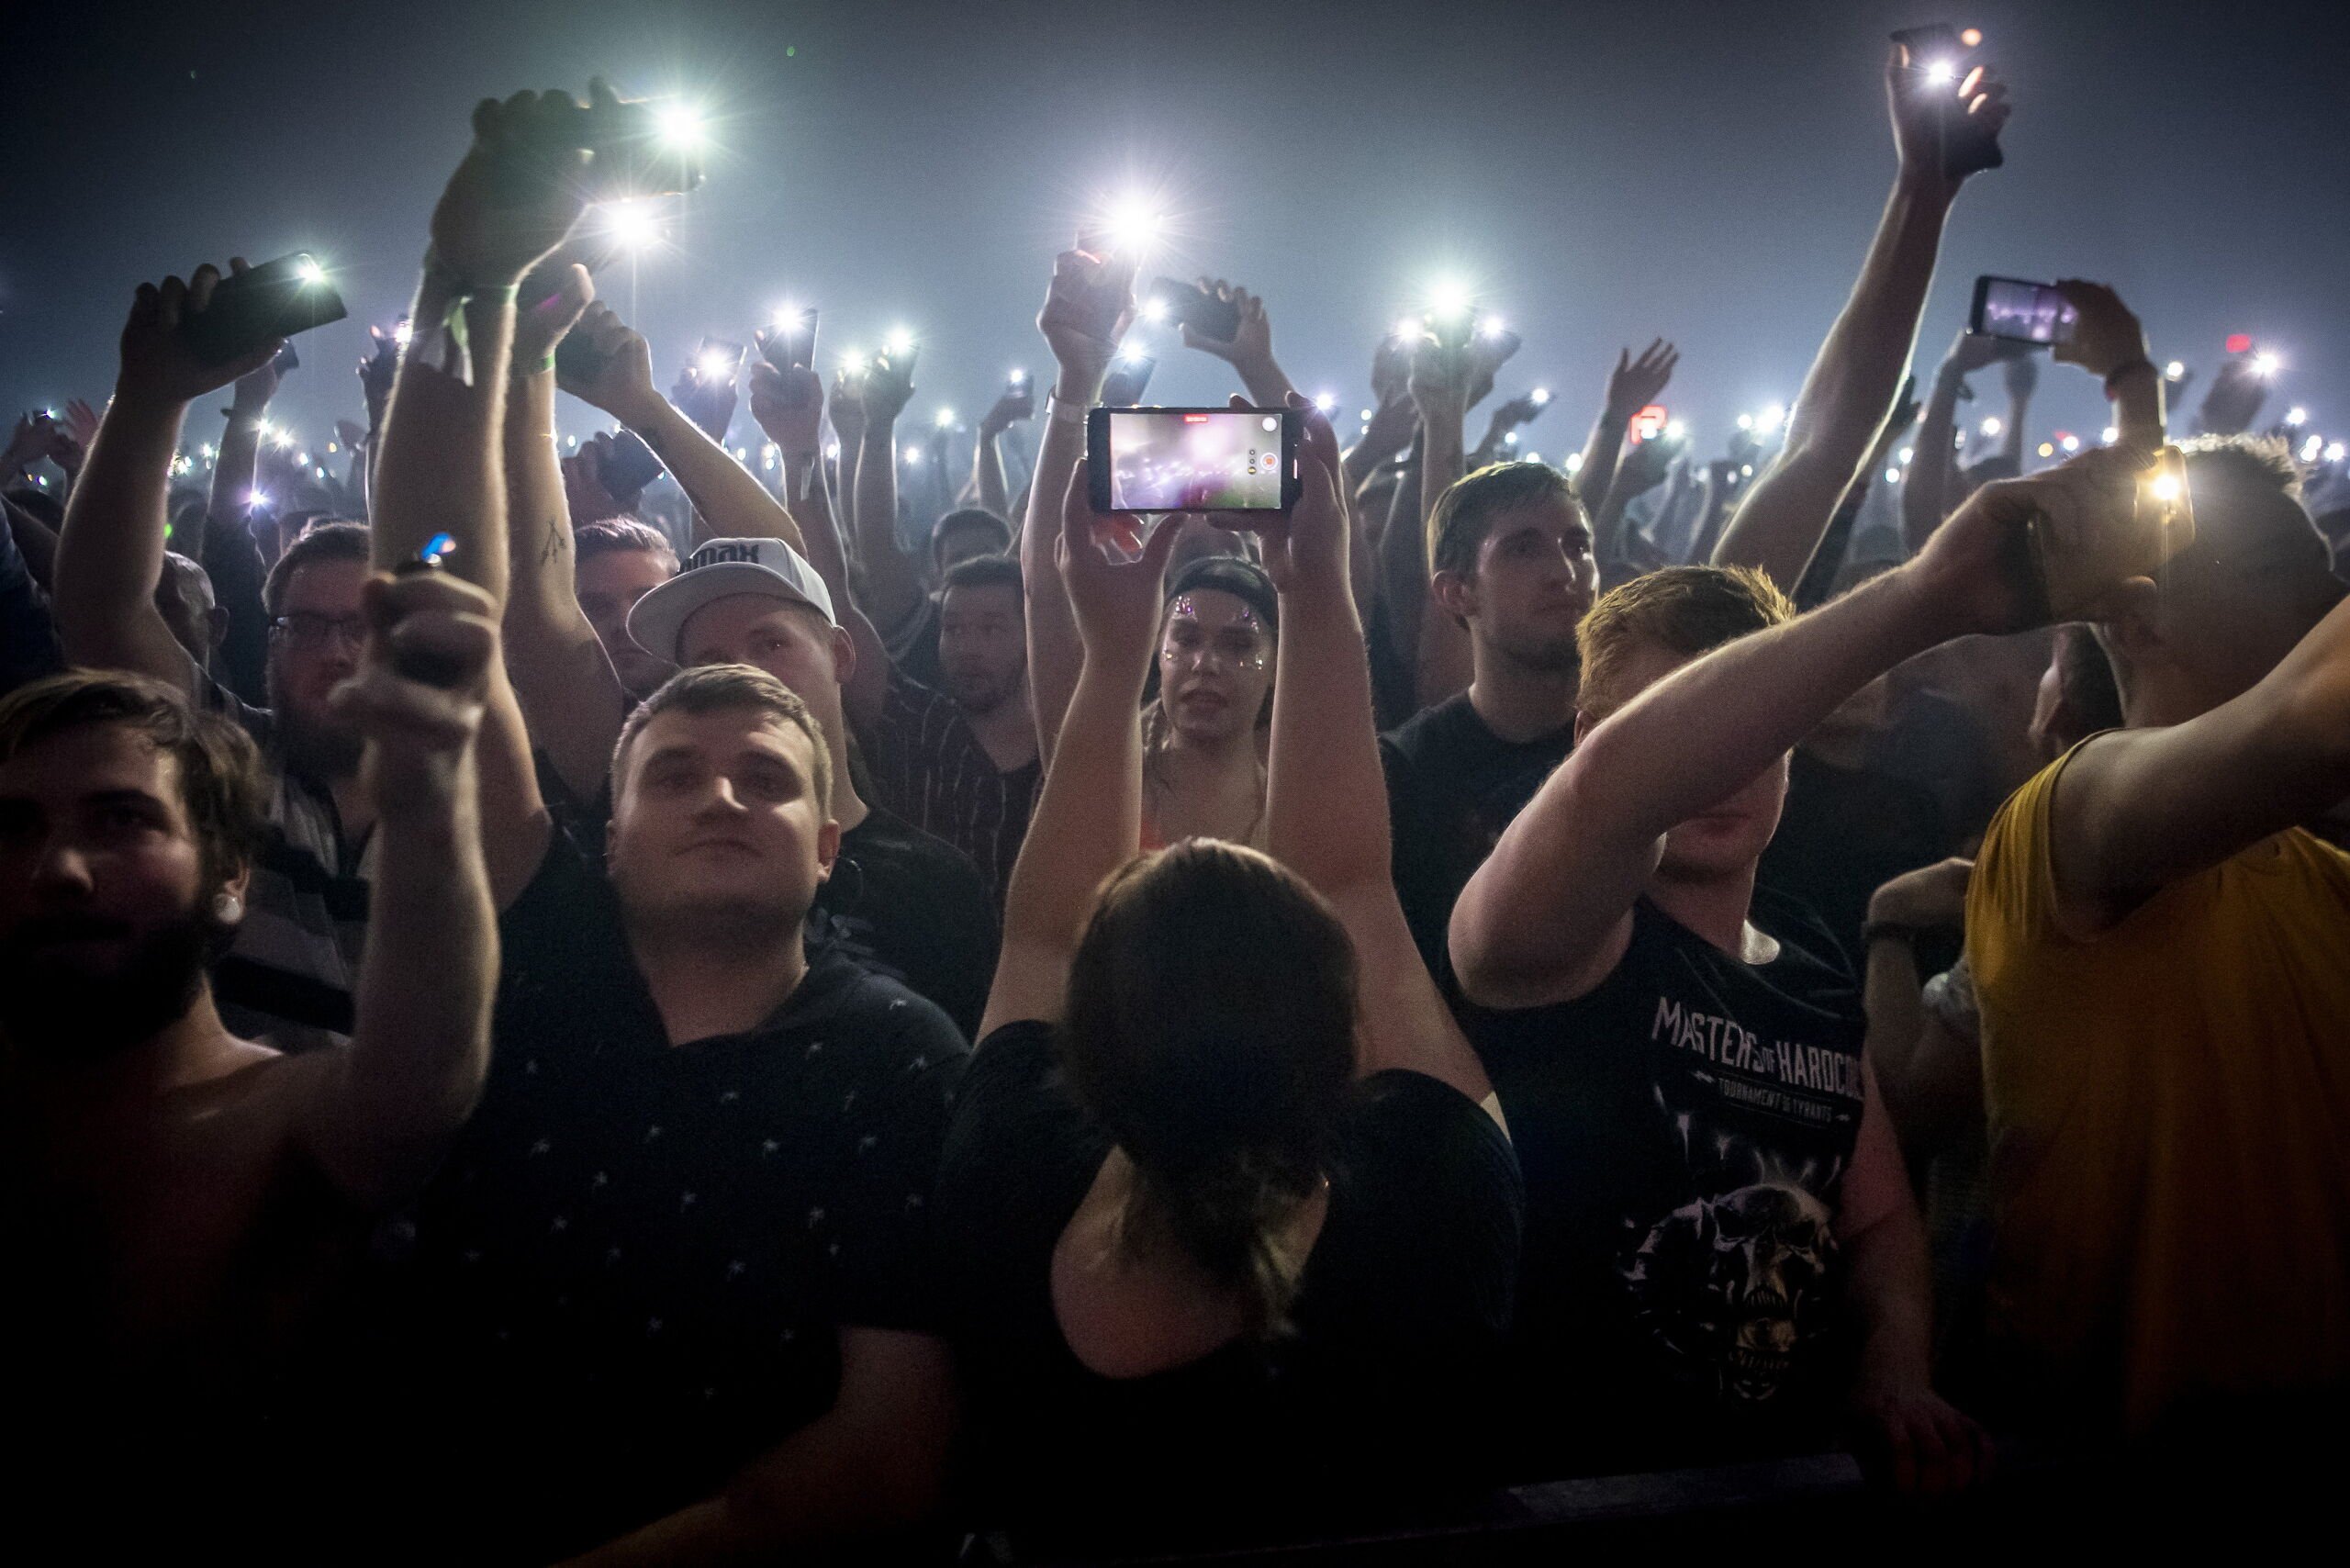 Danmarks største elektroniske festival er tilbage